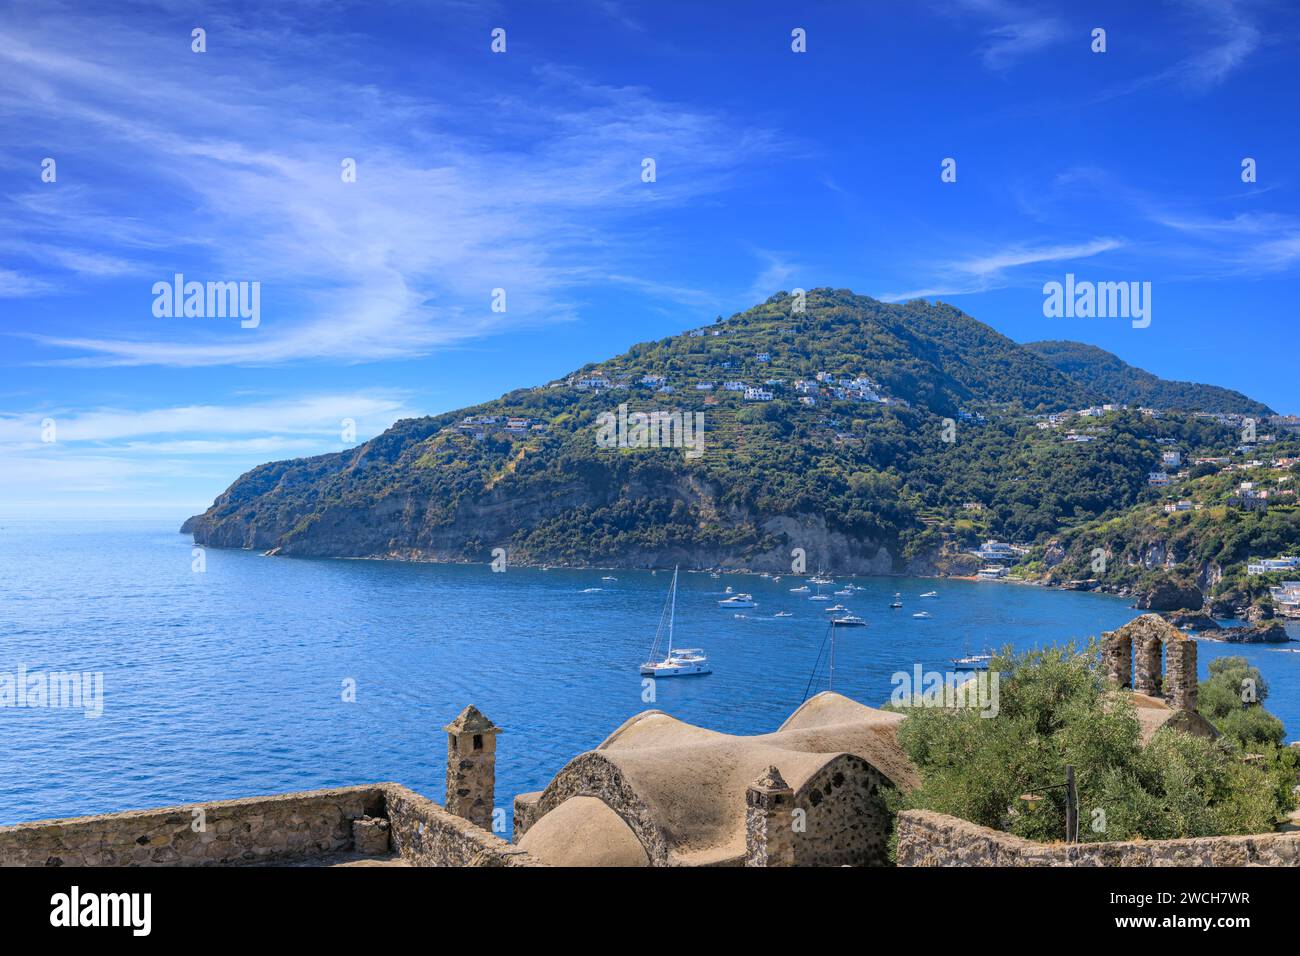 Vista dell'isola di Ischia da una suggestiva architettura medievale sul Castello Aragonese in Italia. Foto Stock